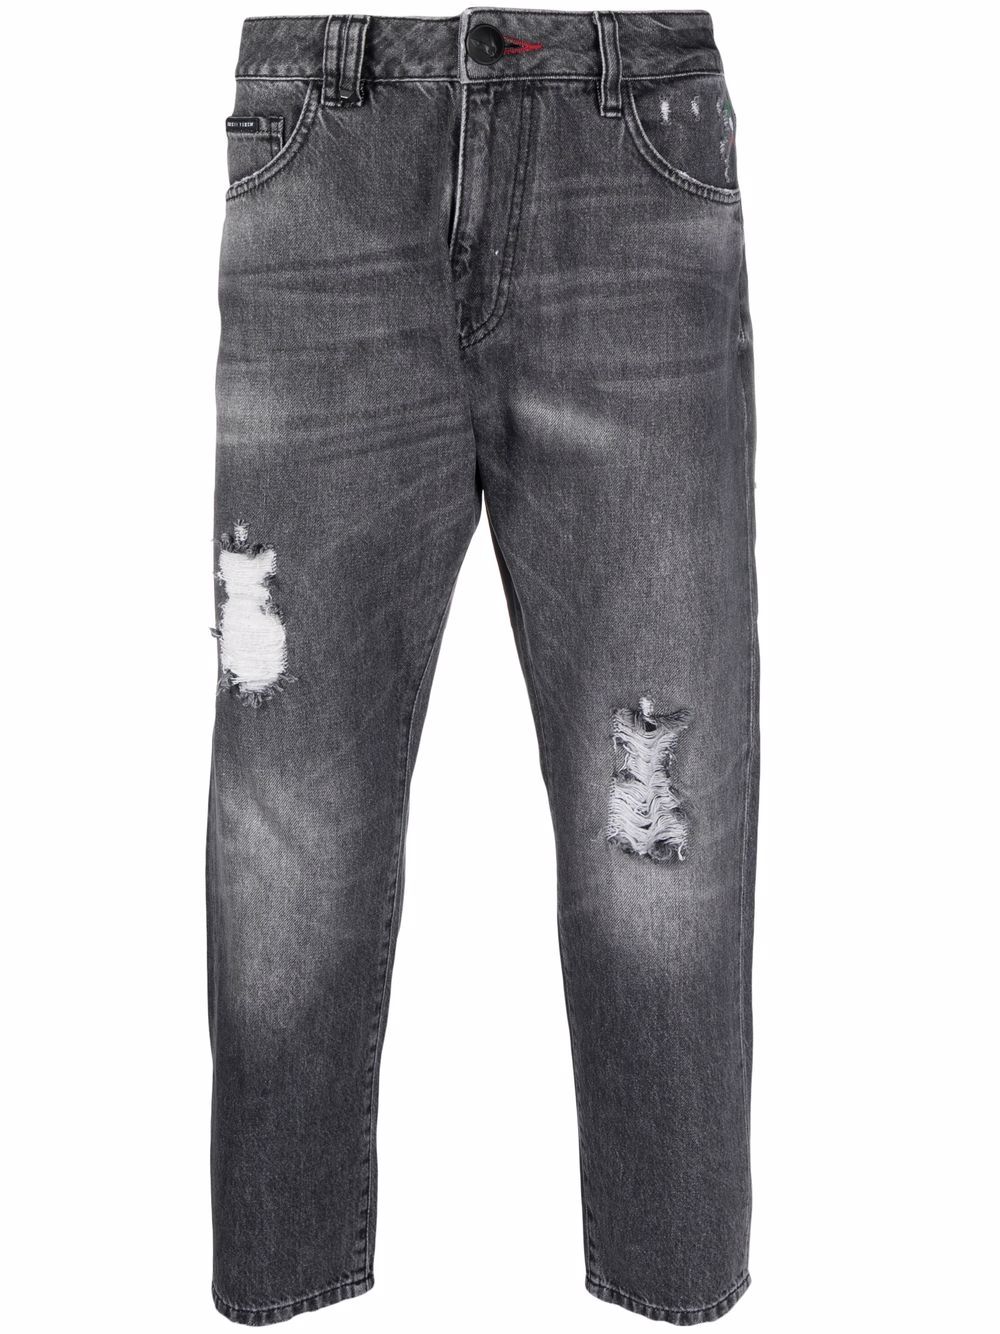 фото Philipp plein укороченные джинсы с эффектом потертости